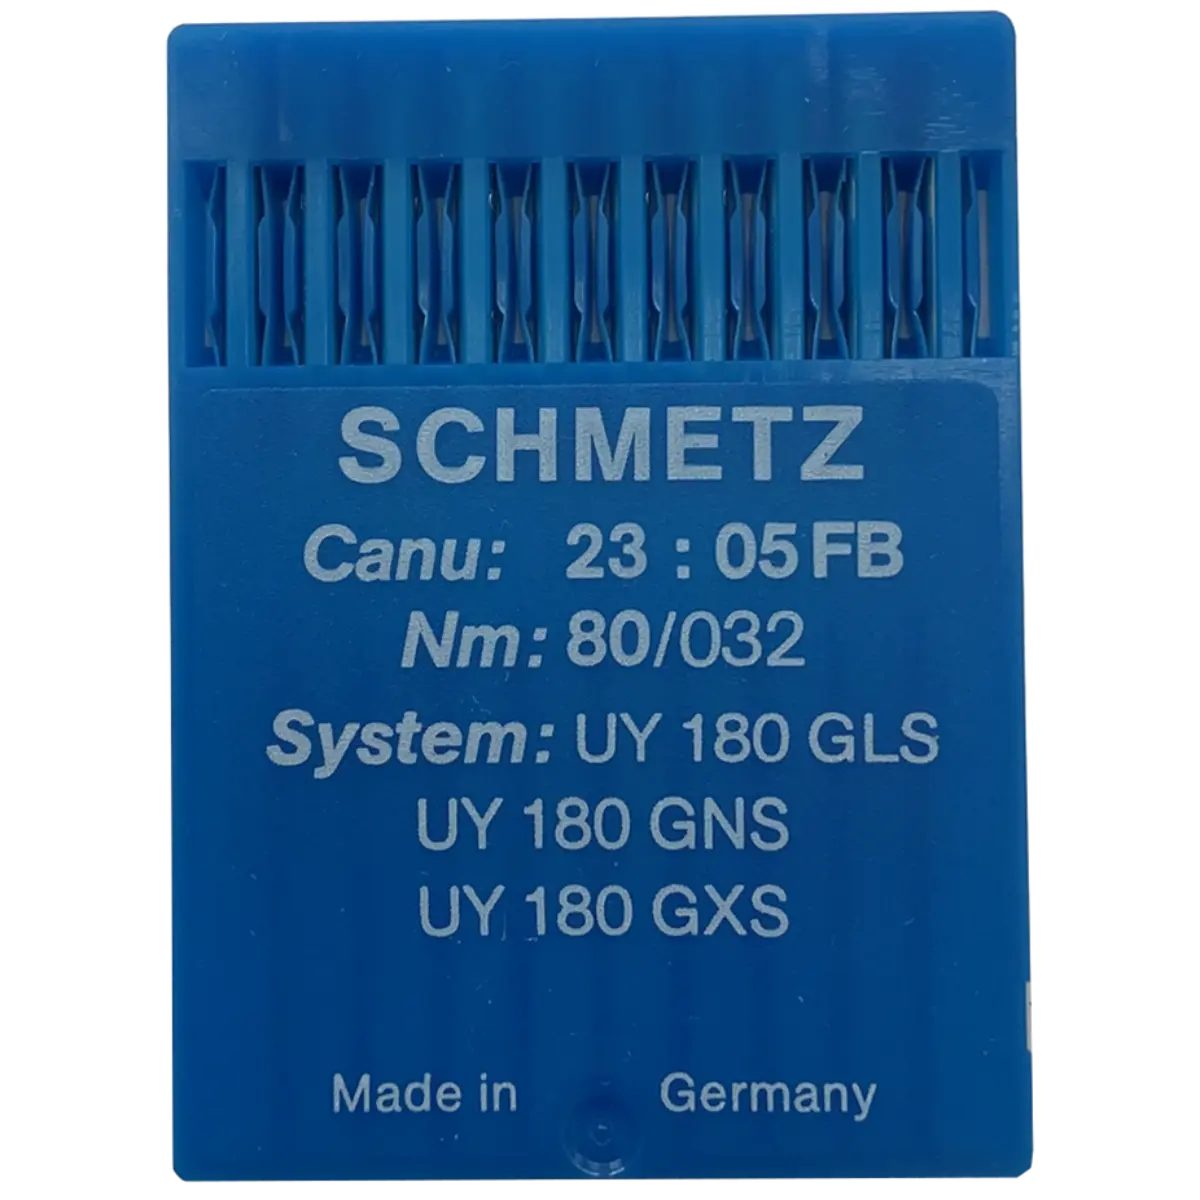 Schmetz Industrial Needles UY 180 GS, UY 180GLS,  UY 180 GXS, SY 6935  GXS, Canu: 23 : 05